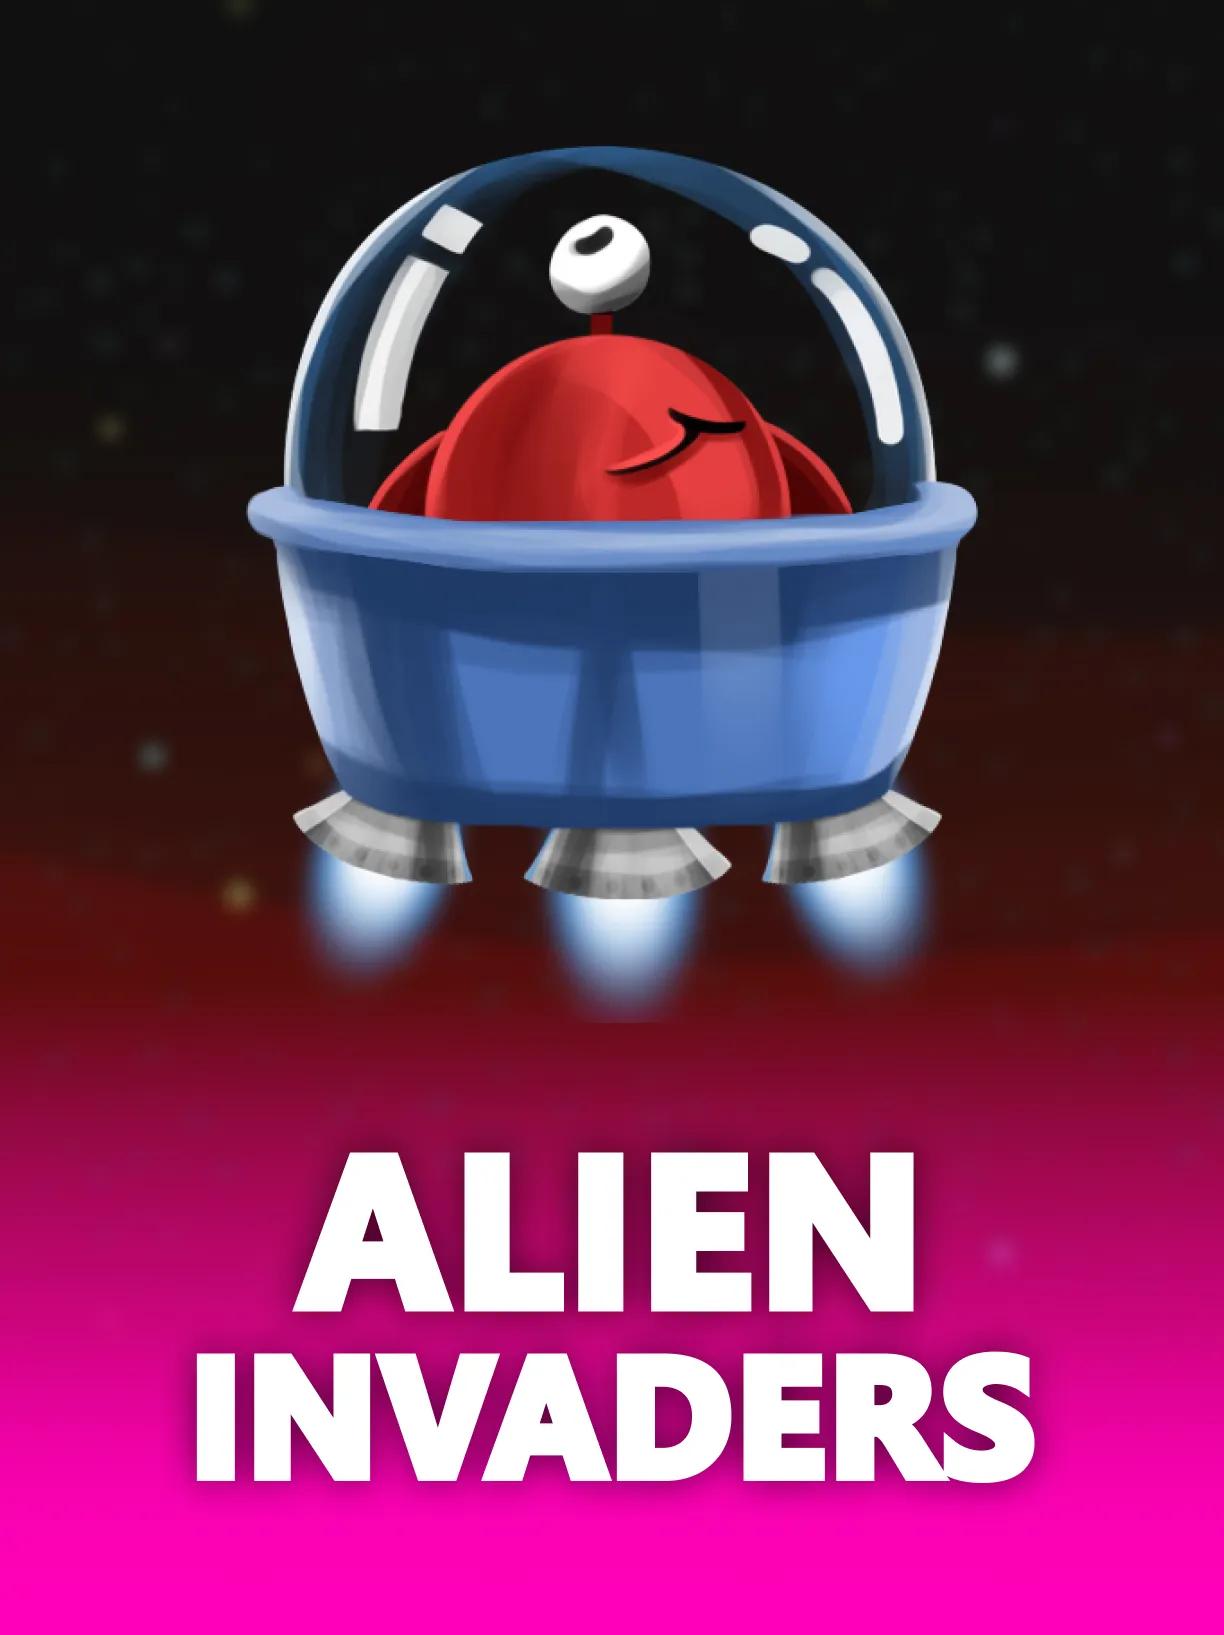 ug_Alien_Invaders_square.webp